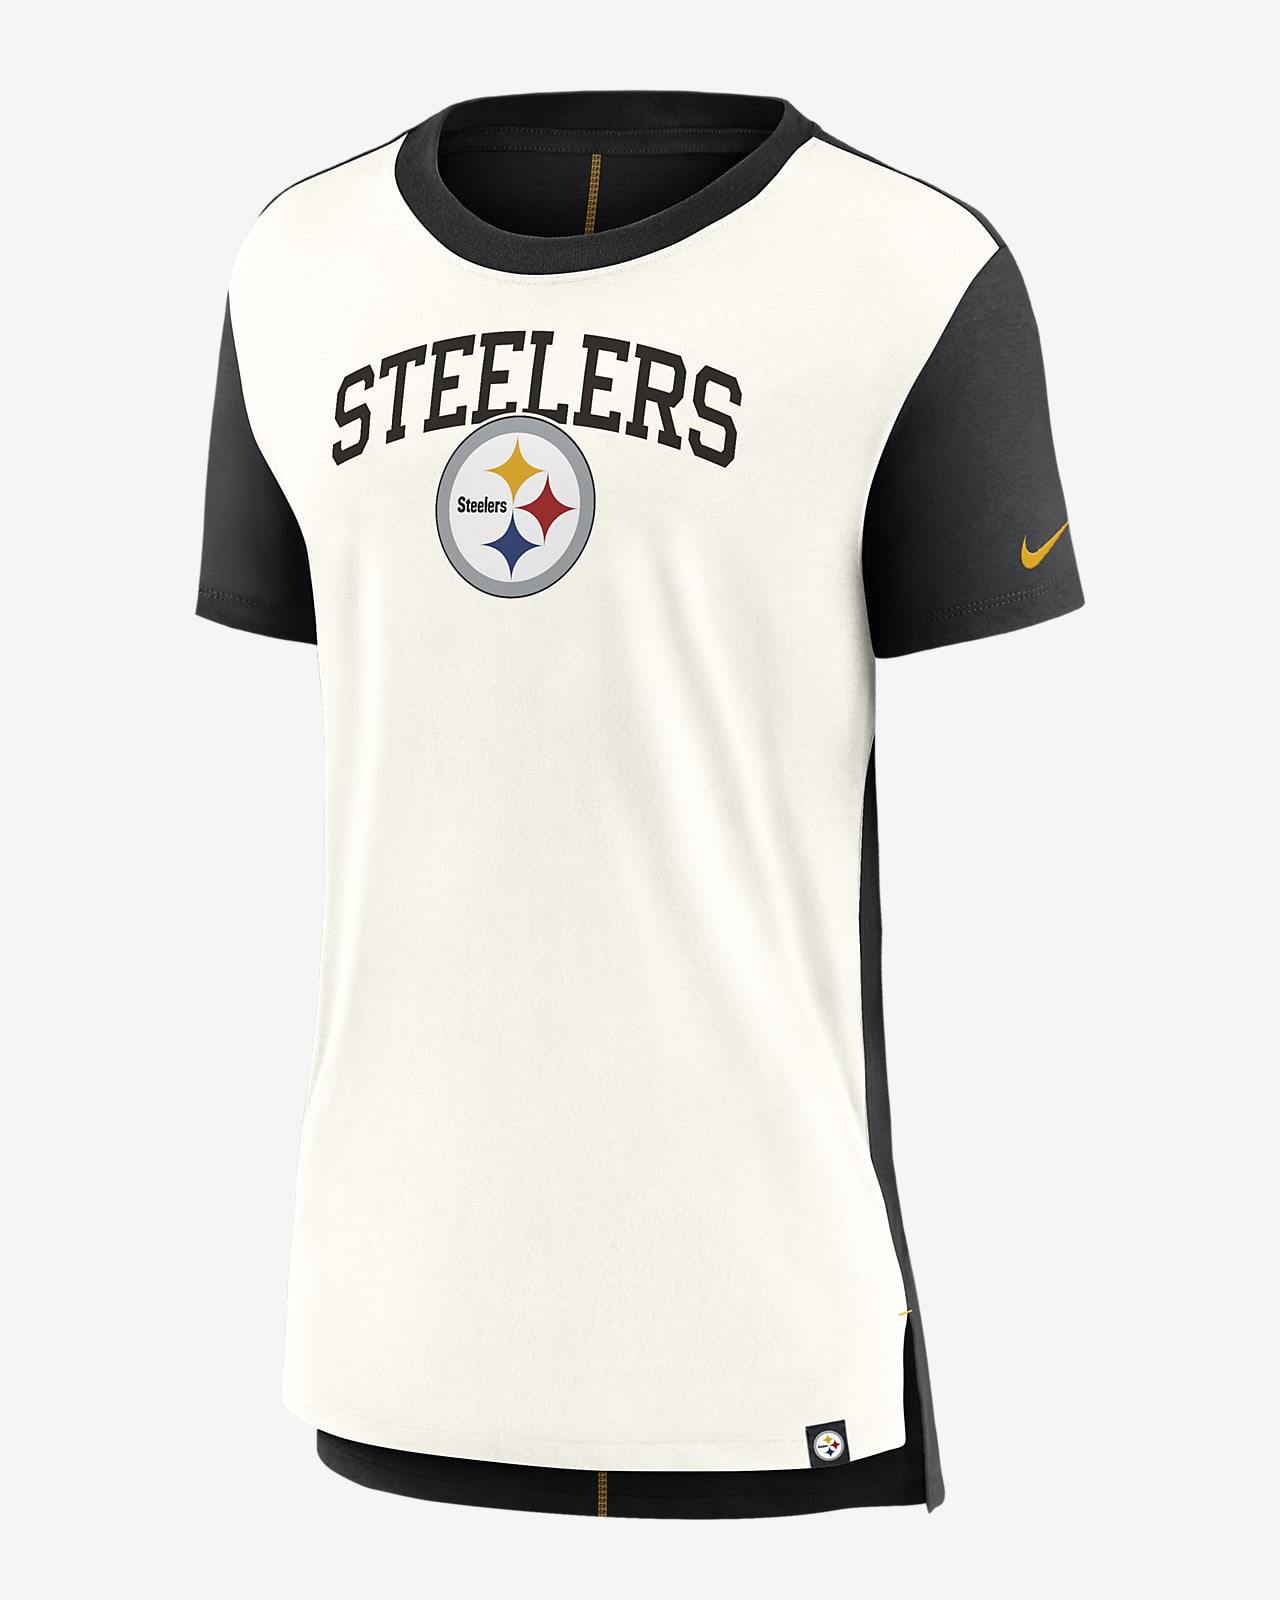 Playera Nike de la NFL para mujer Pittsburgh Steelers